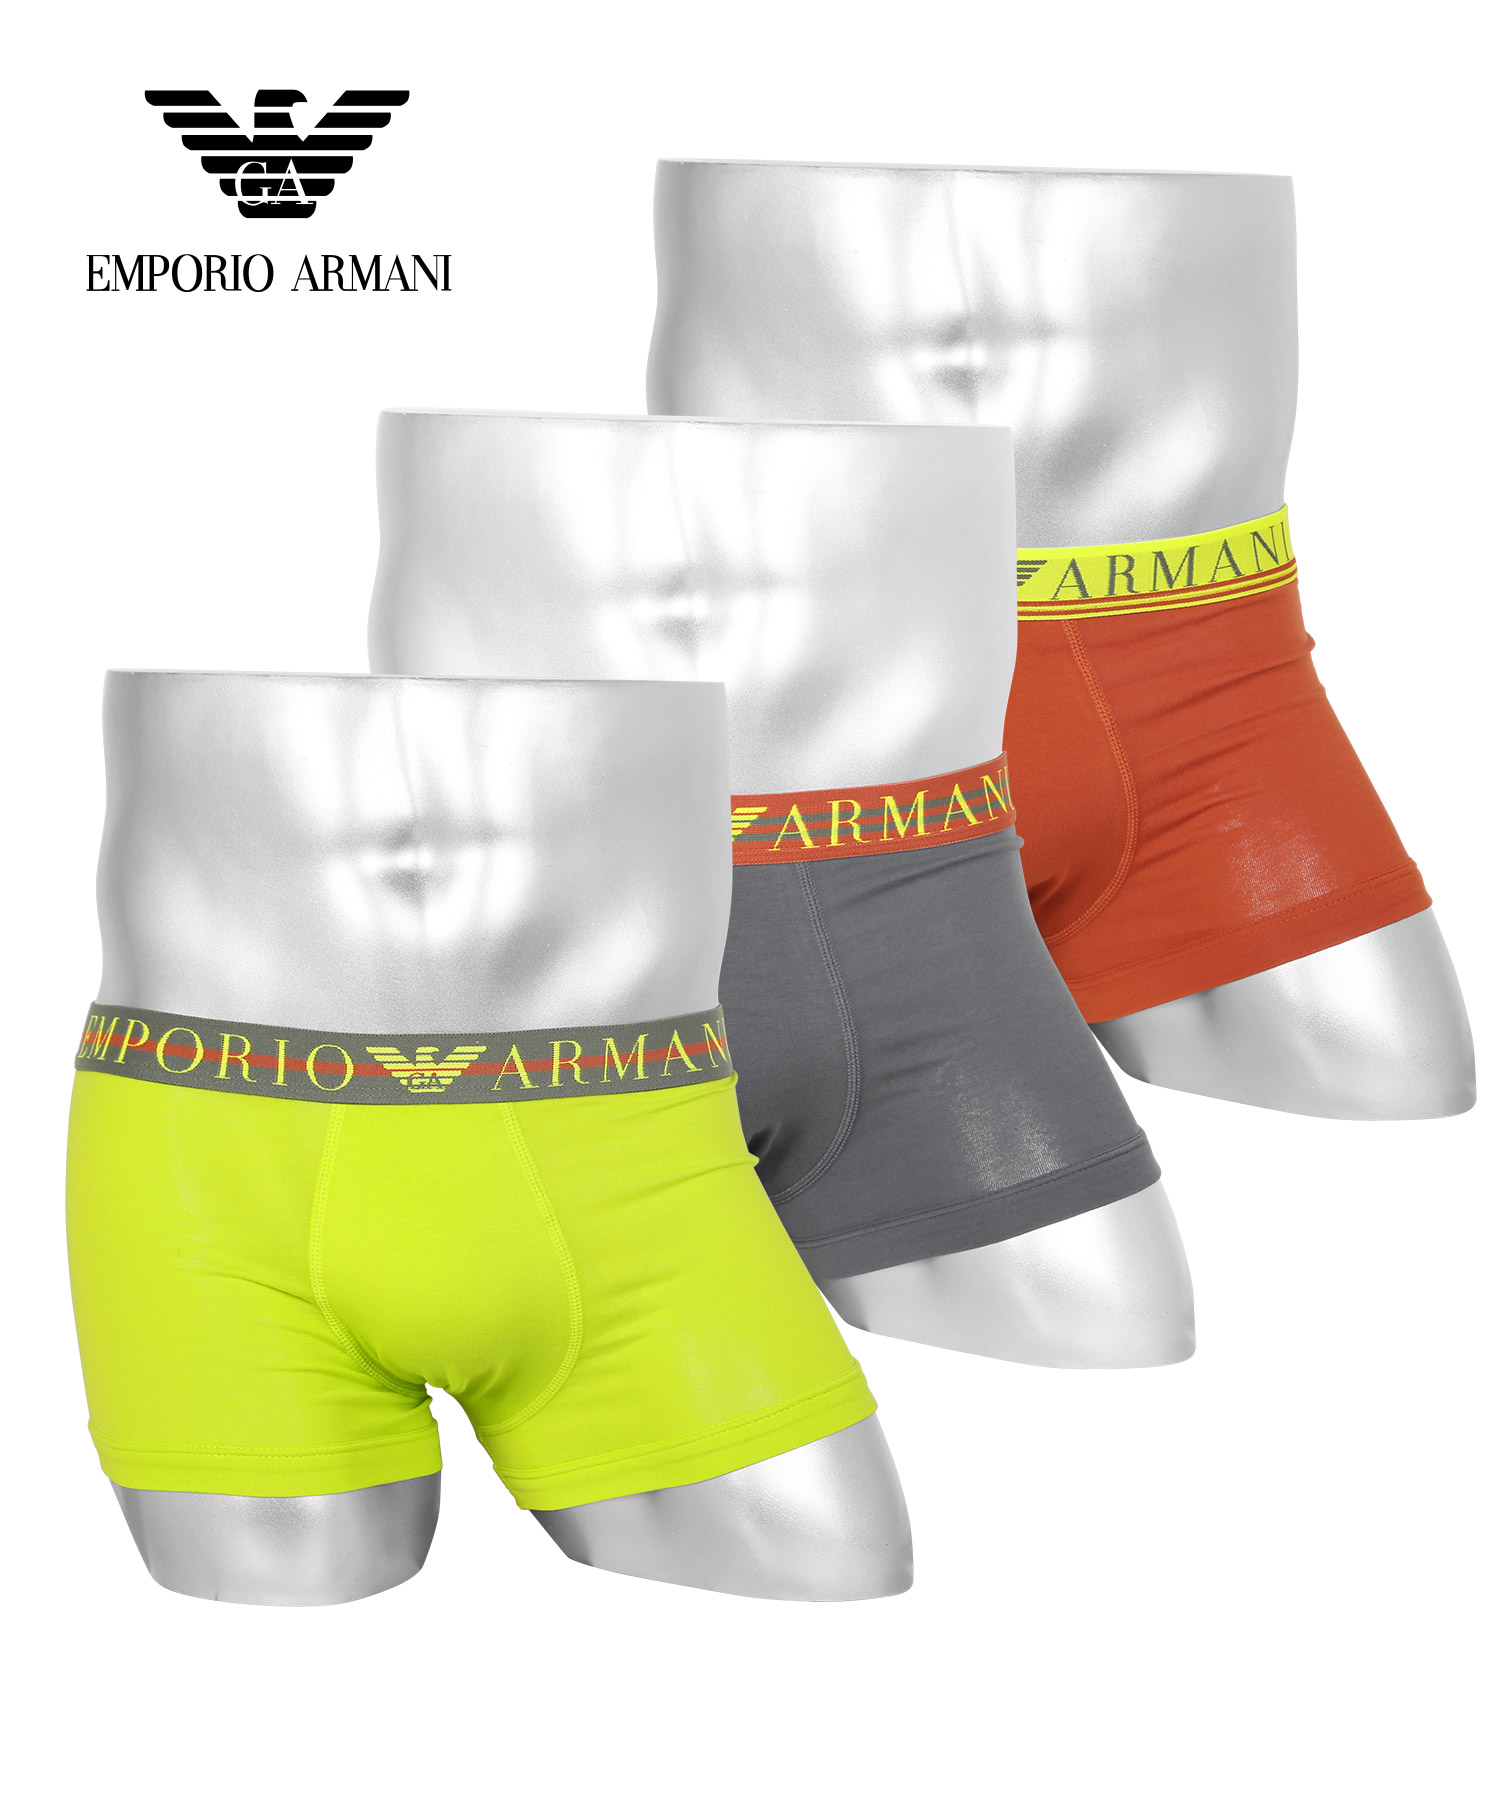 エンポリオ アルマーニ EMPORIO ARMANI ボクサーパンツ 3枚セット メンズ アンダーウェア 男性 下着 綿混 コットン ロゴ 高級  ハイブランド プレゼント ギフト